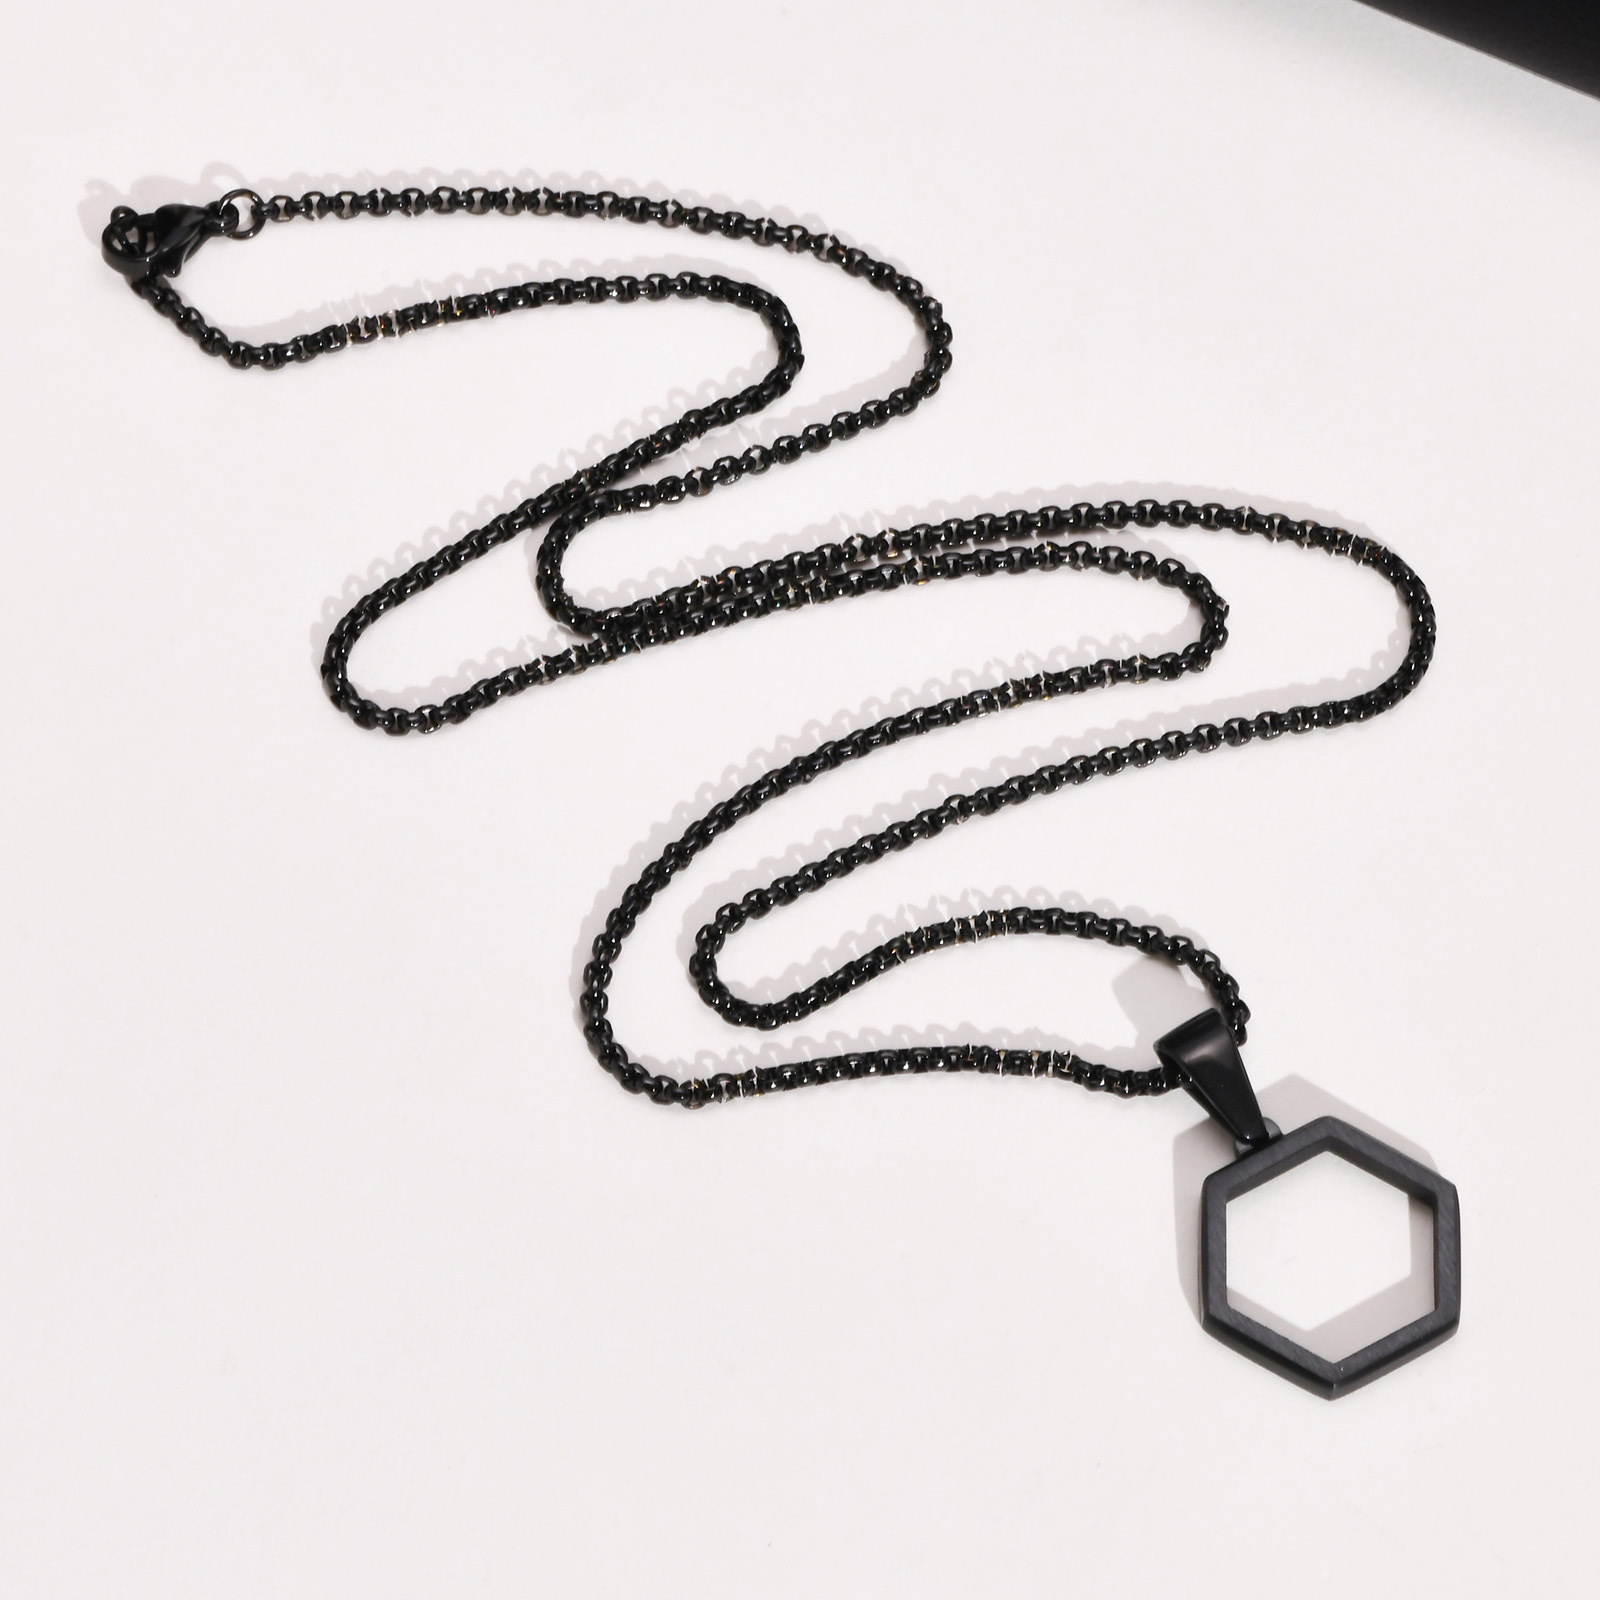 2:Pendant necklace